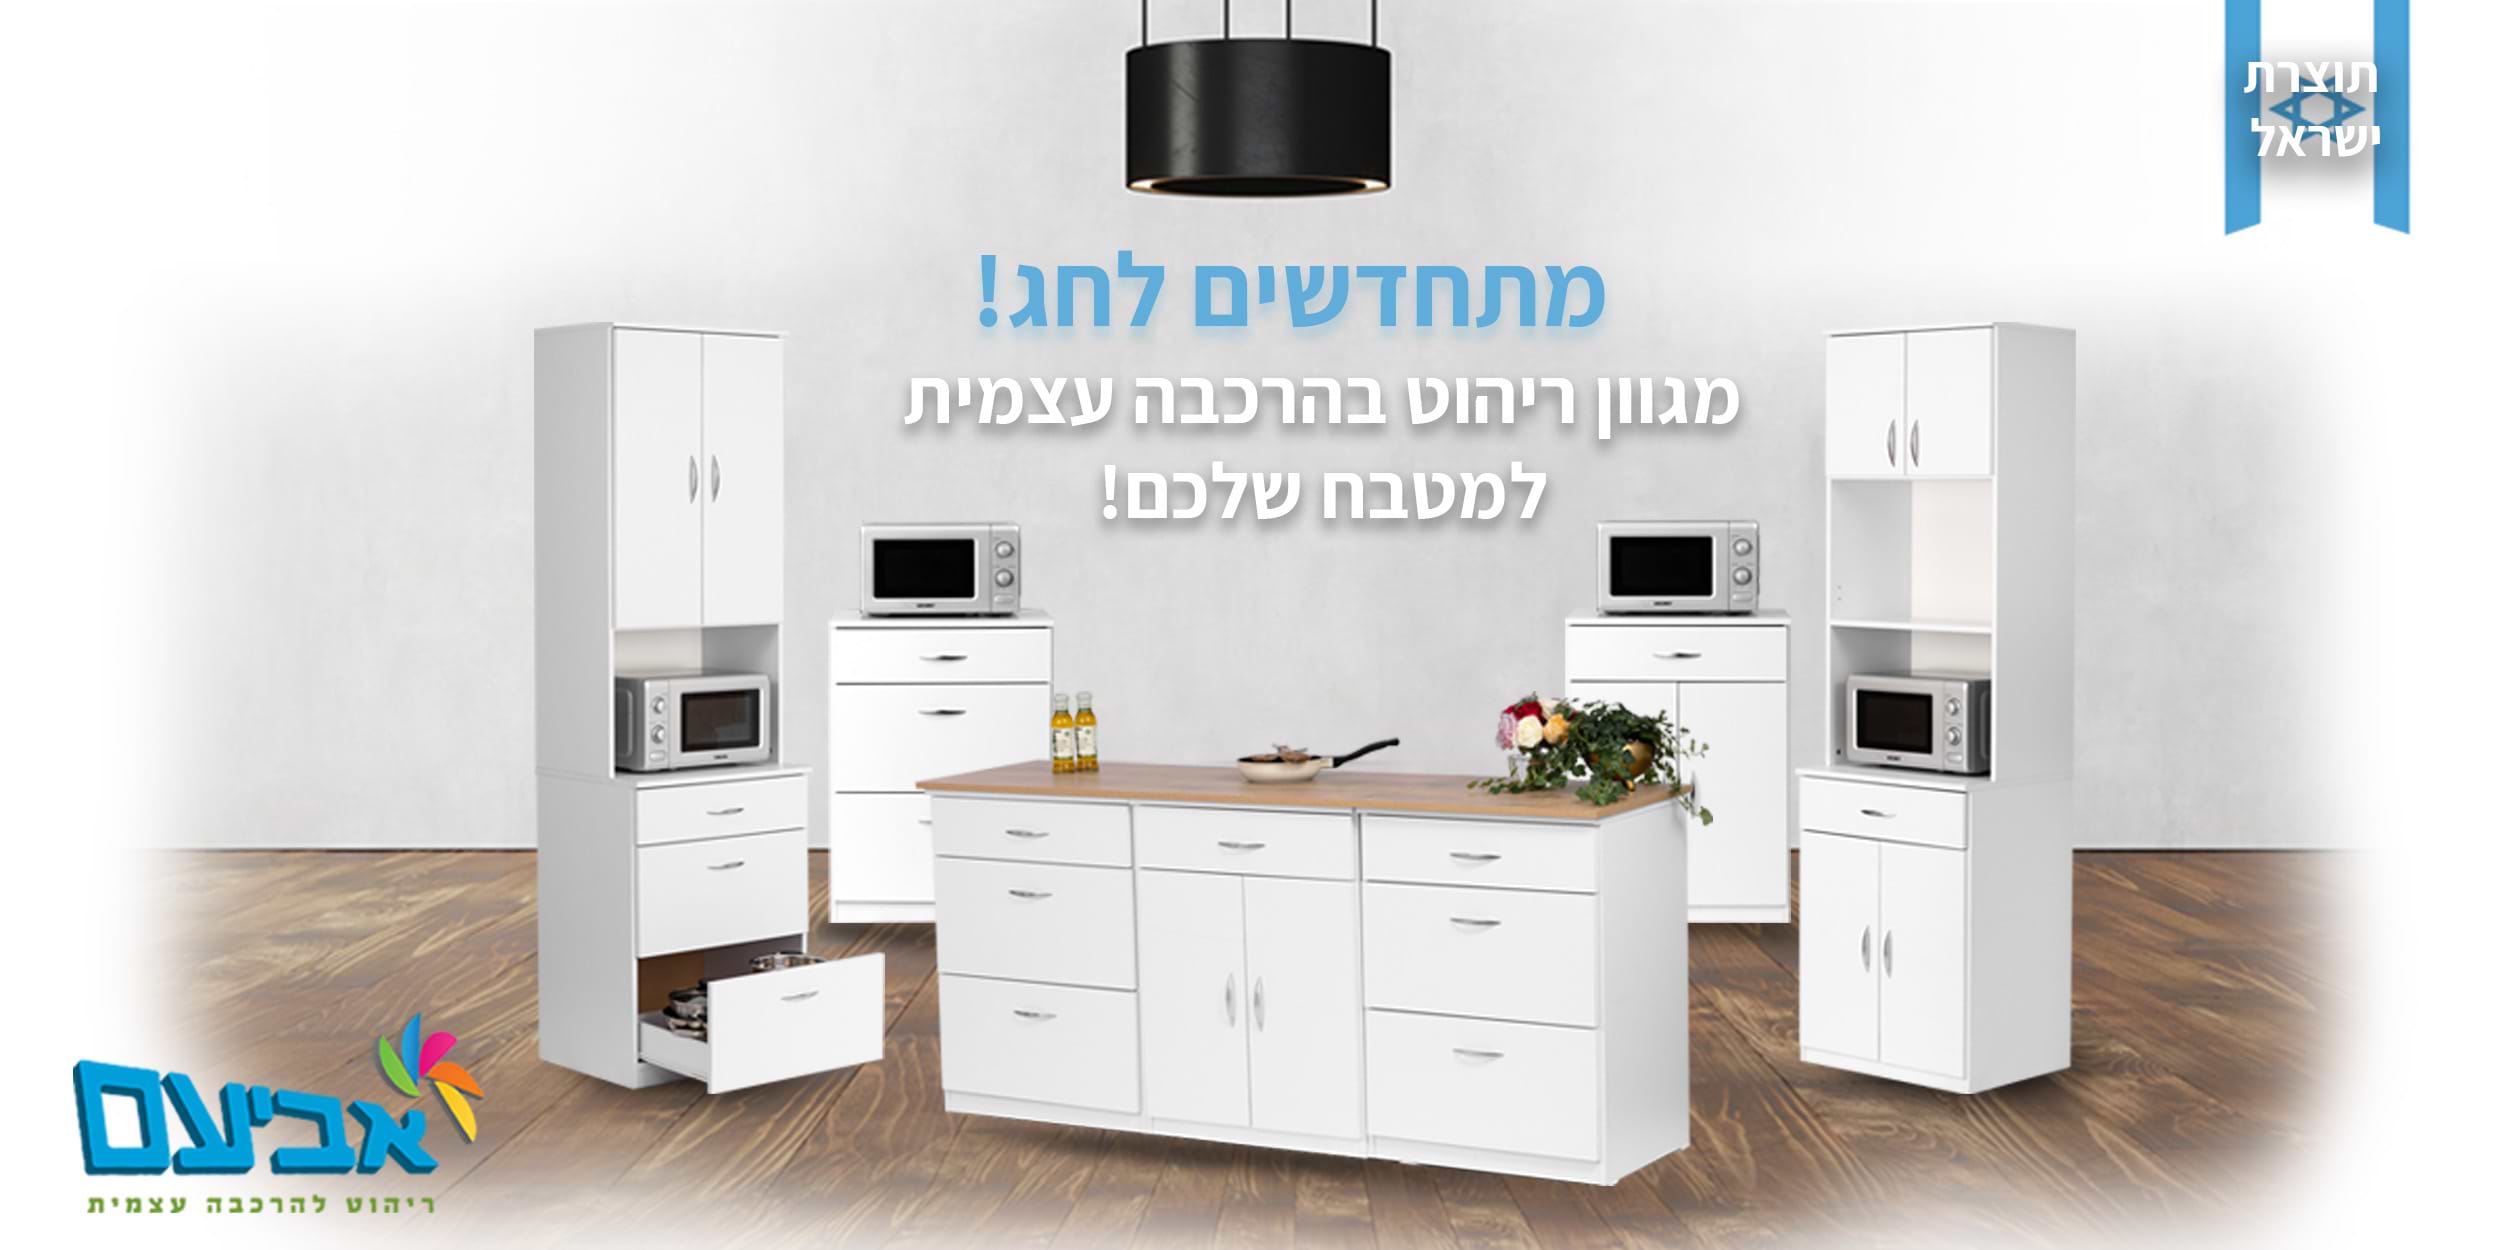 מתחדשים לחג ! מגוון ריהוט בהרכבה עצמית למטבח שלכם! תוצרת ישראל .